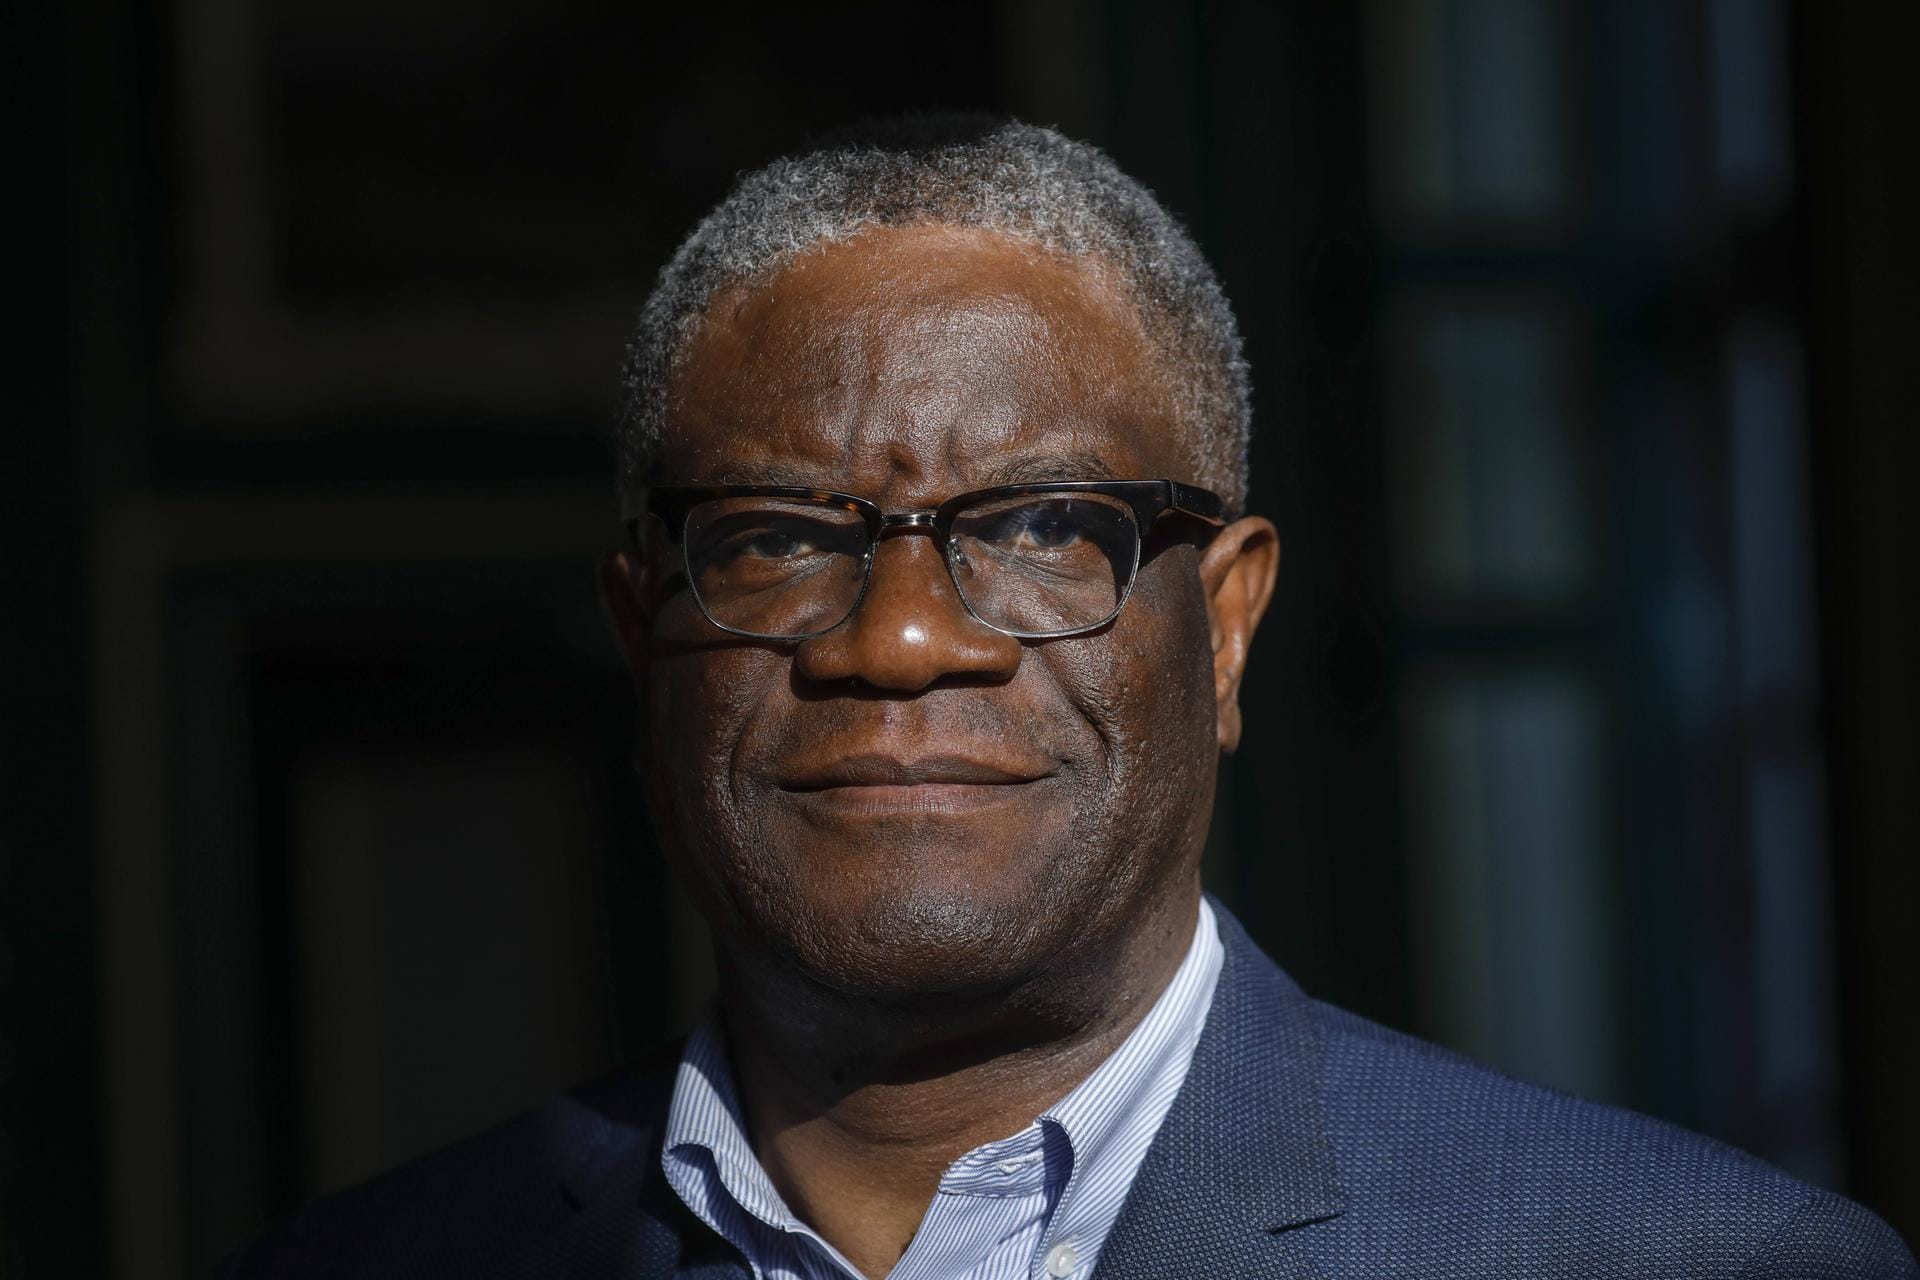 Denis Mukwege, 2013, Gynäkologe im Bürgerkriegsland Kongo: "Für seine langjährige Arbeit, Frauen, die sexuelle Kriegsgewalt überlebt haben, zu heilen, und für seinen Mut, die Ursachen und Verantwortlichen zu benennen".